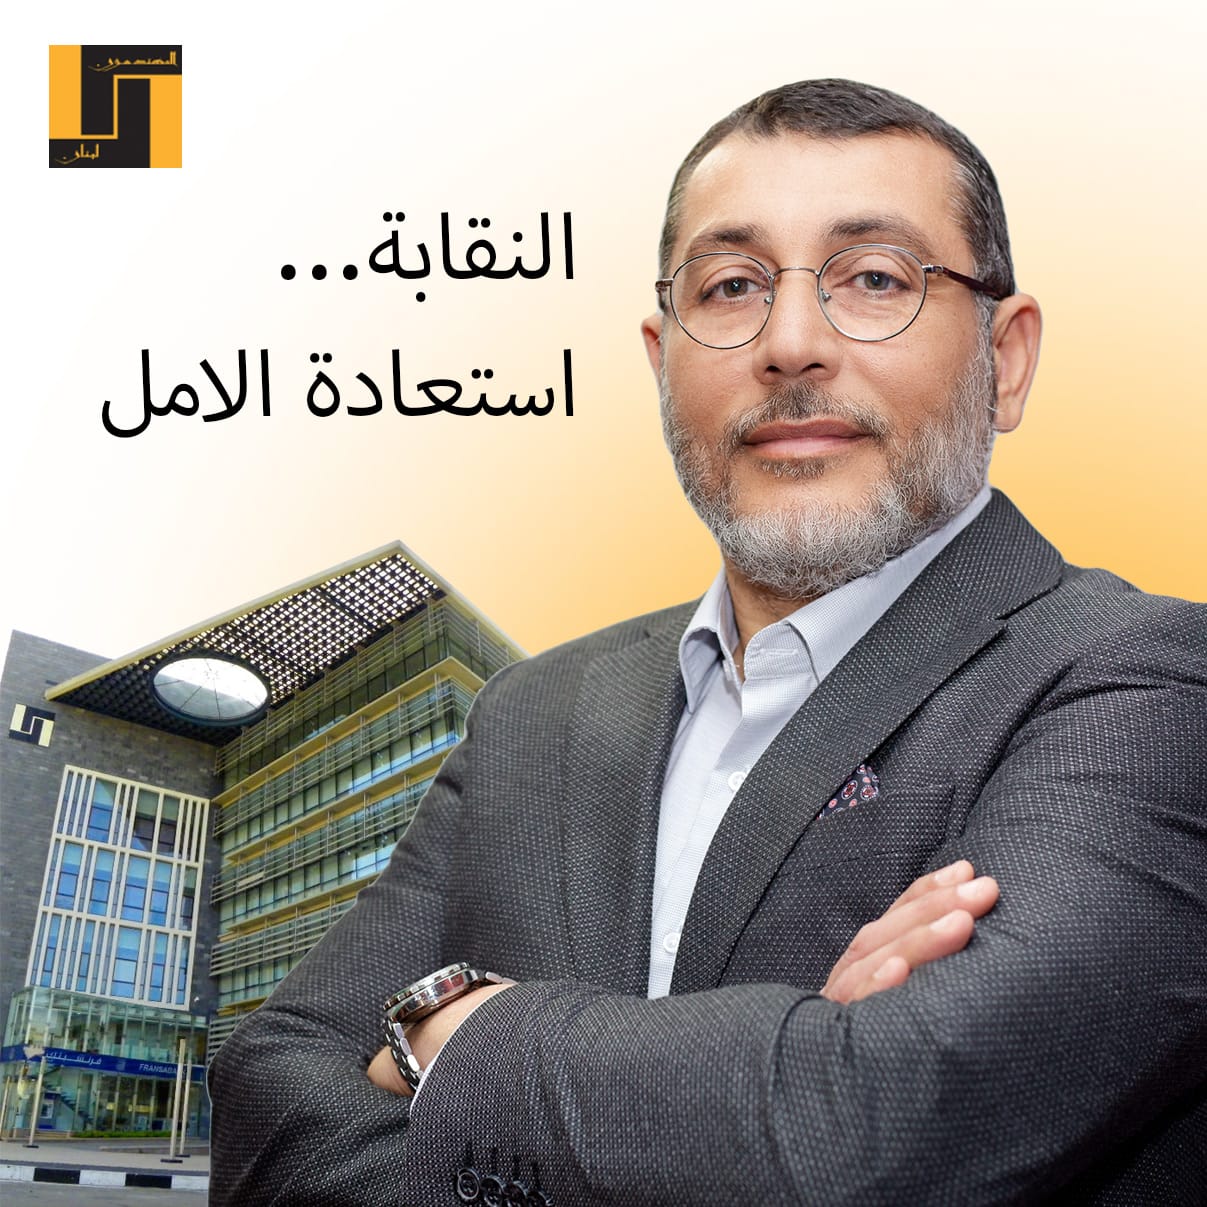 فخر الدين مرشحا لانتخابات مهندسي طرابلس